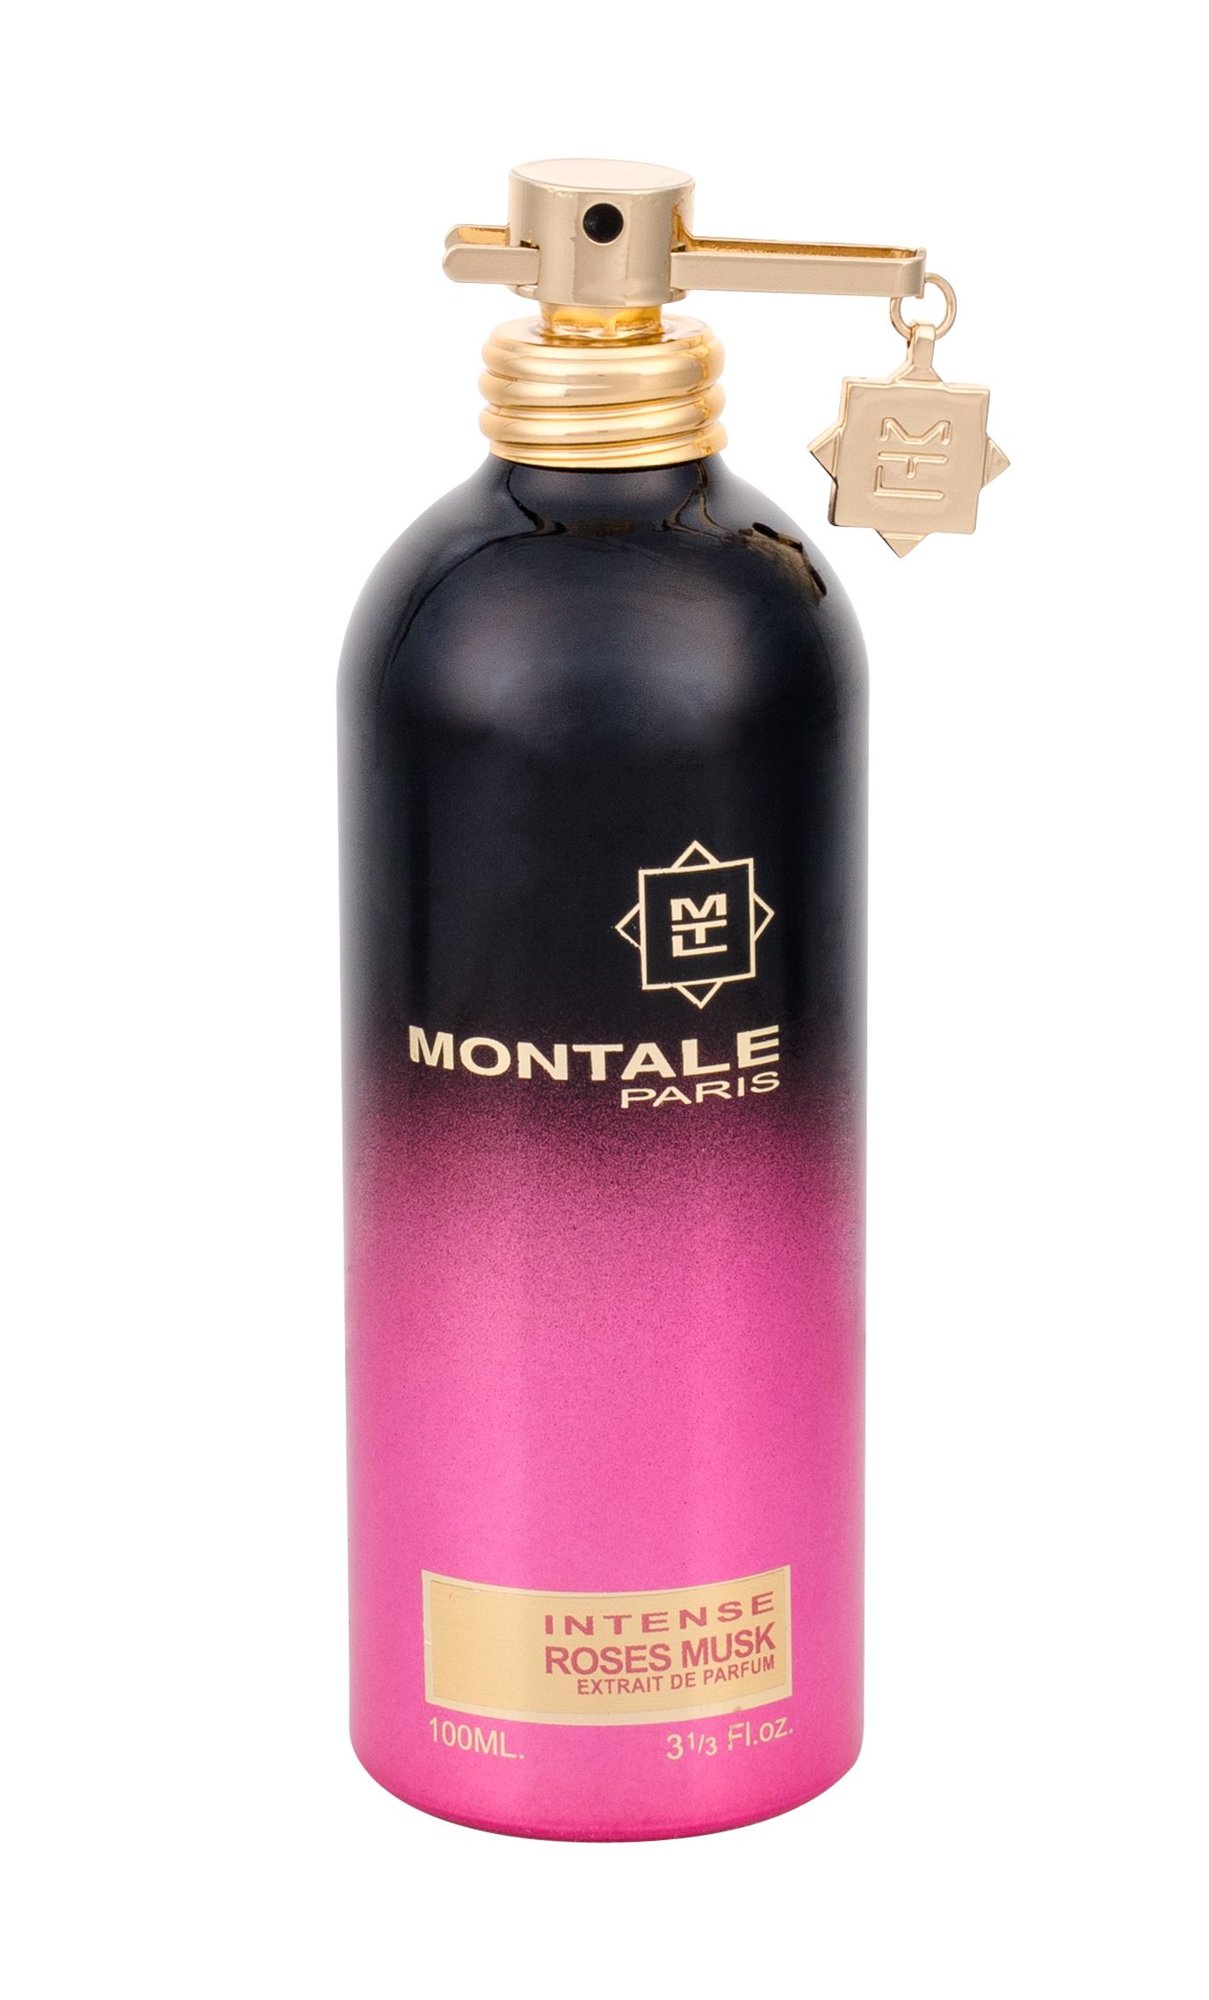 Montale Paris Intense Roses Musk 10 ml NIŠINIAI kvepalų mėginukas (atomaizeris) Moterims EDP